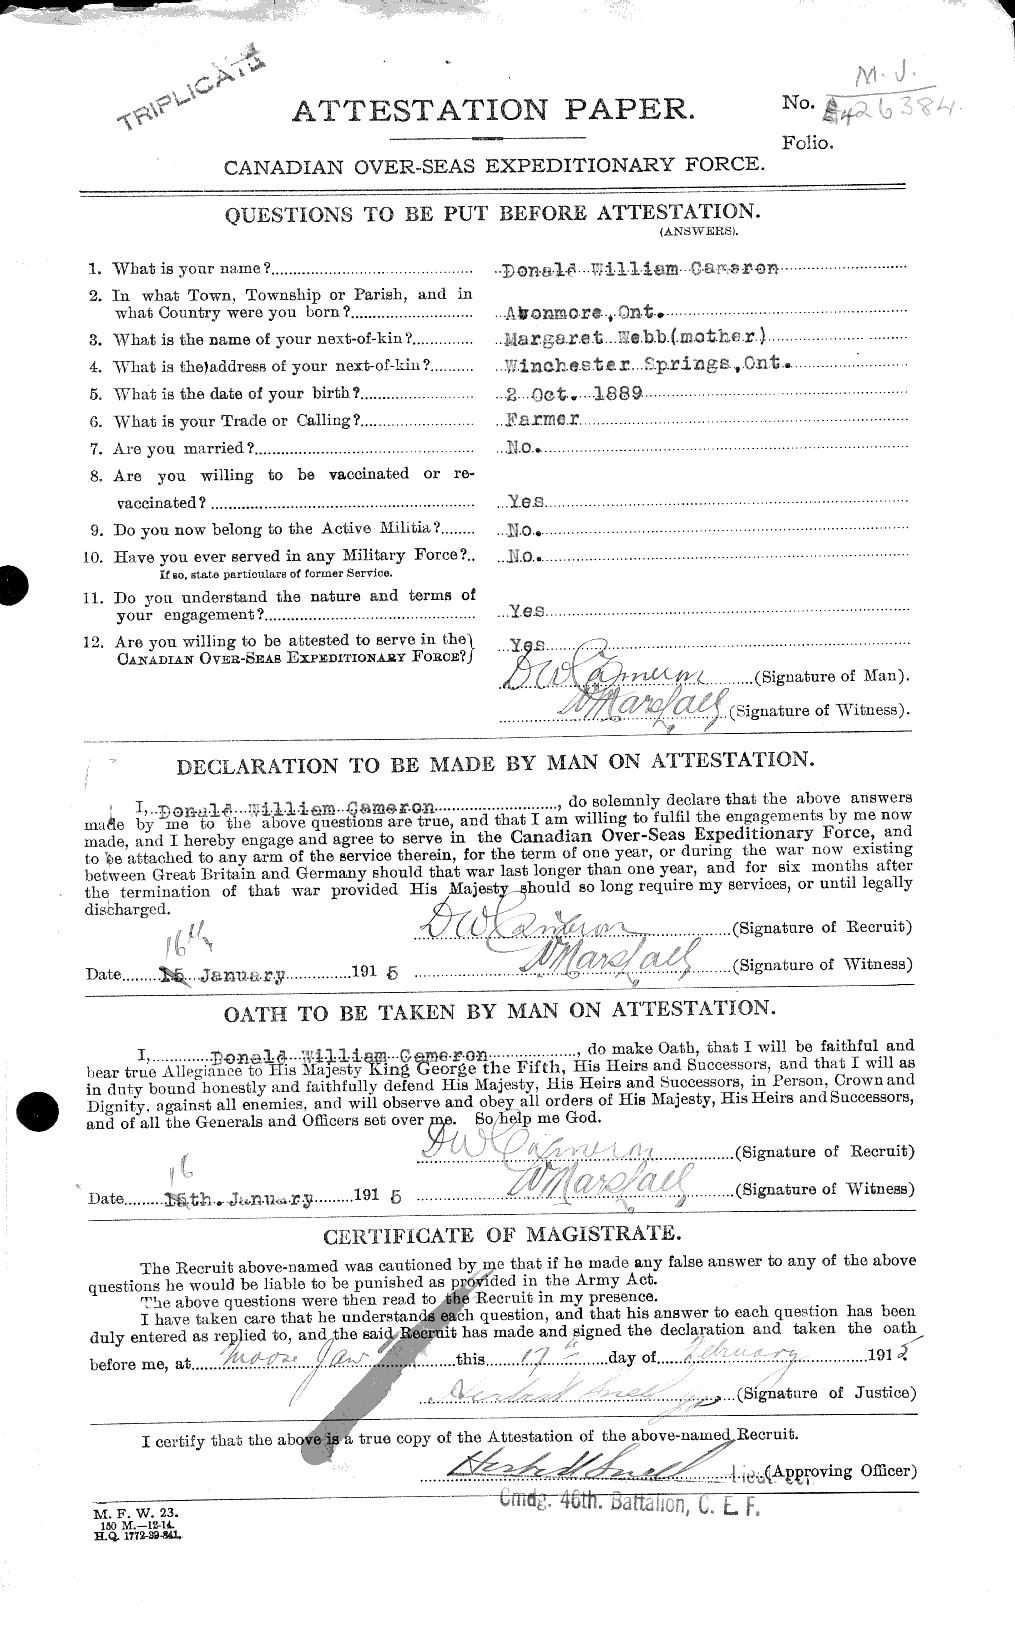 Dossiers du Personnel de la Première Guerre mondiale - CEC 002096a